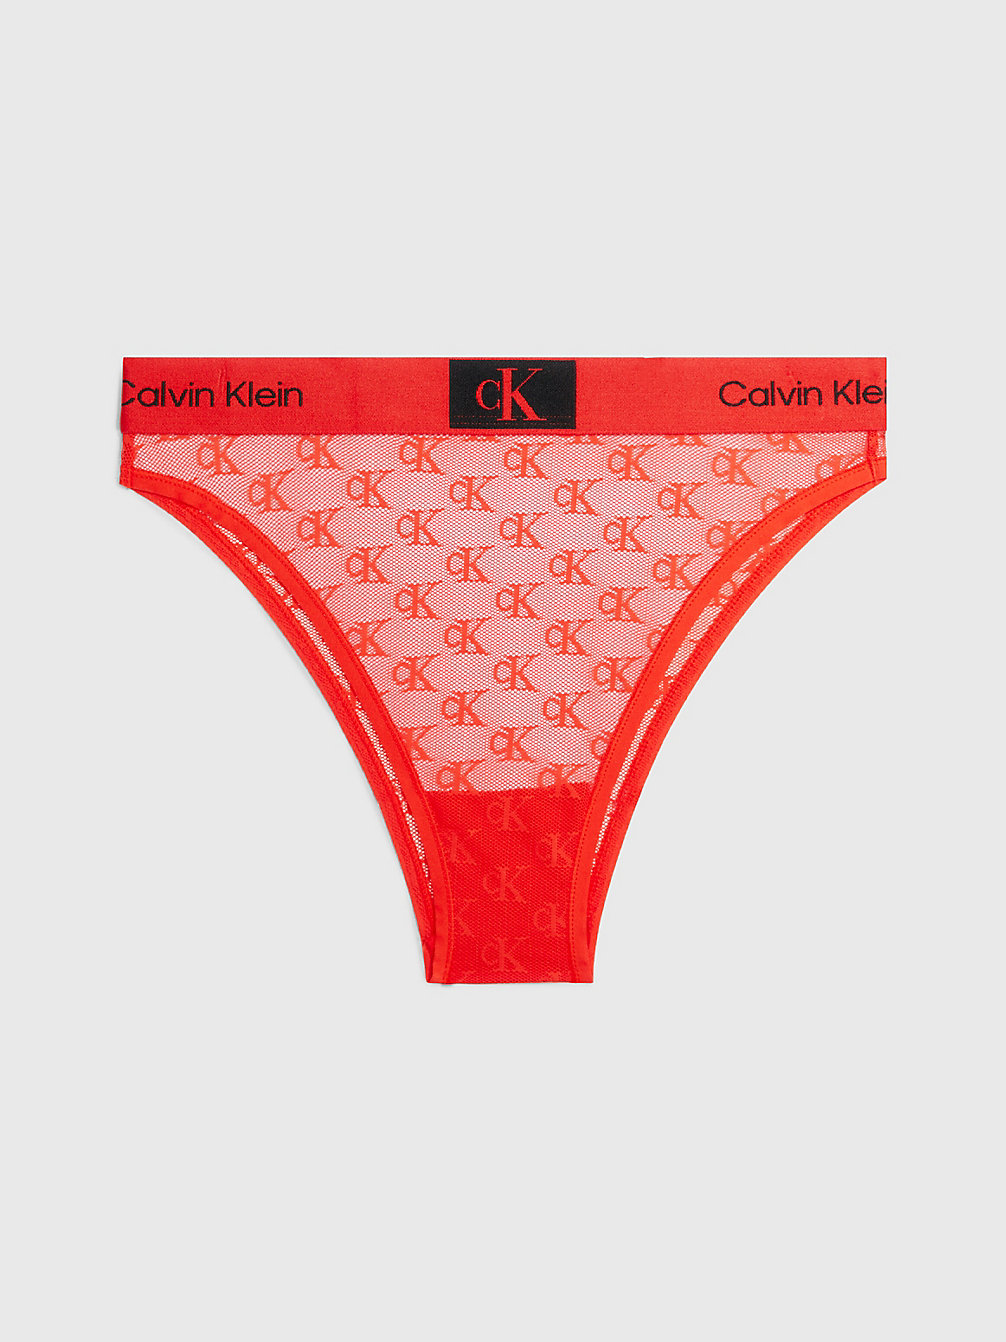 HAZARD > Brazilian Slip Kant - Ck96 > undefined dames - Calvin Klein